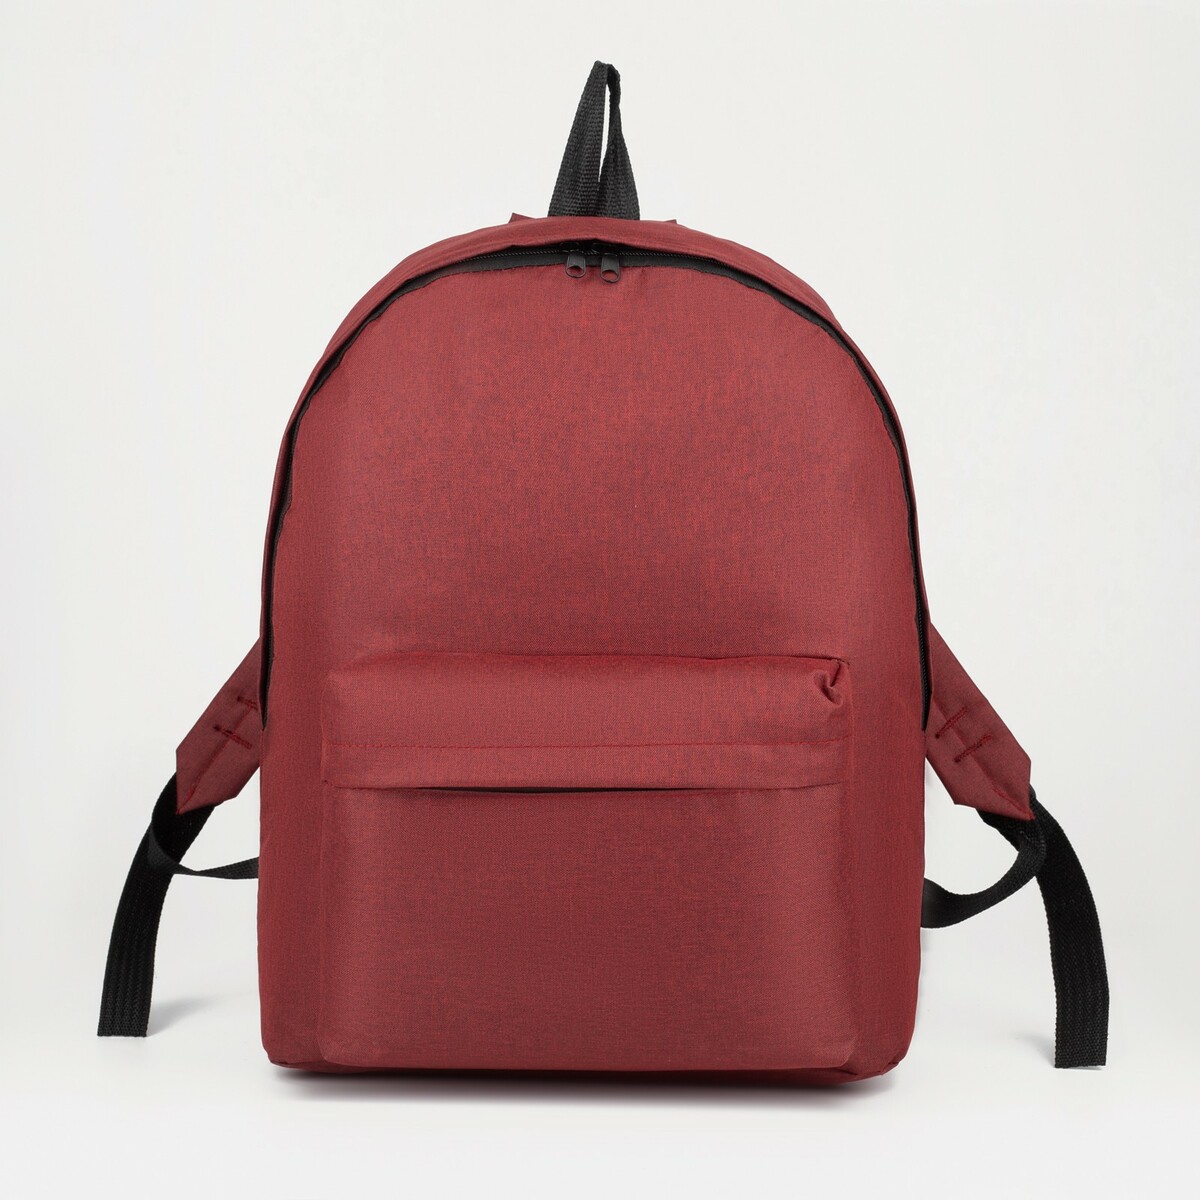 Рюкзак на молнии, наружный карман, цвет бордовый, No brand